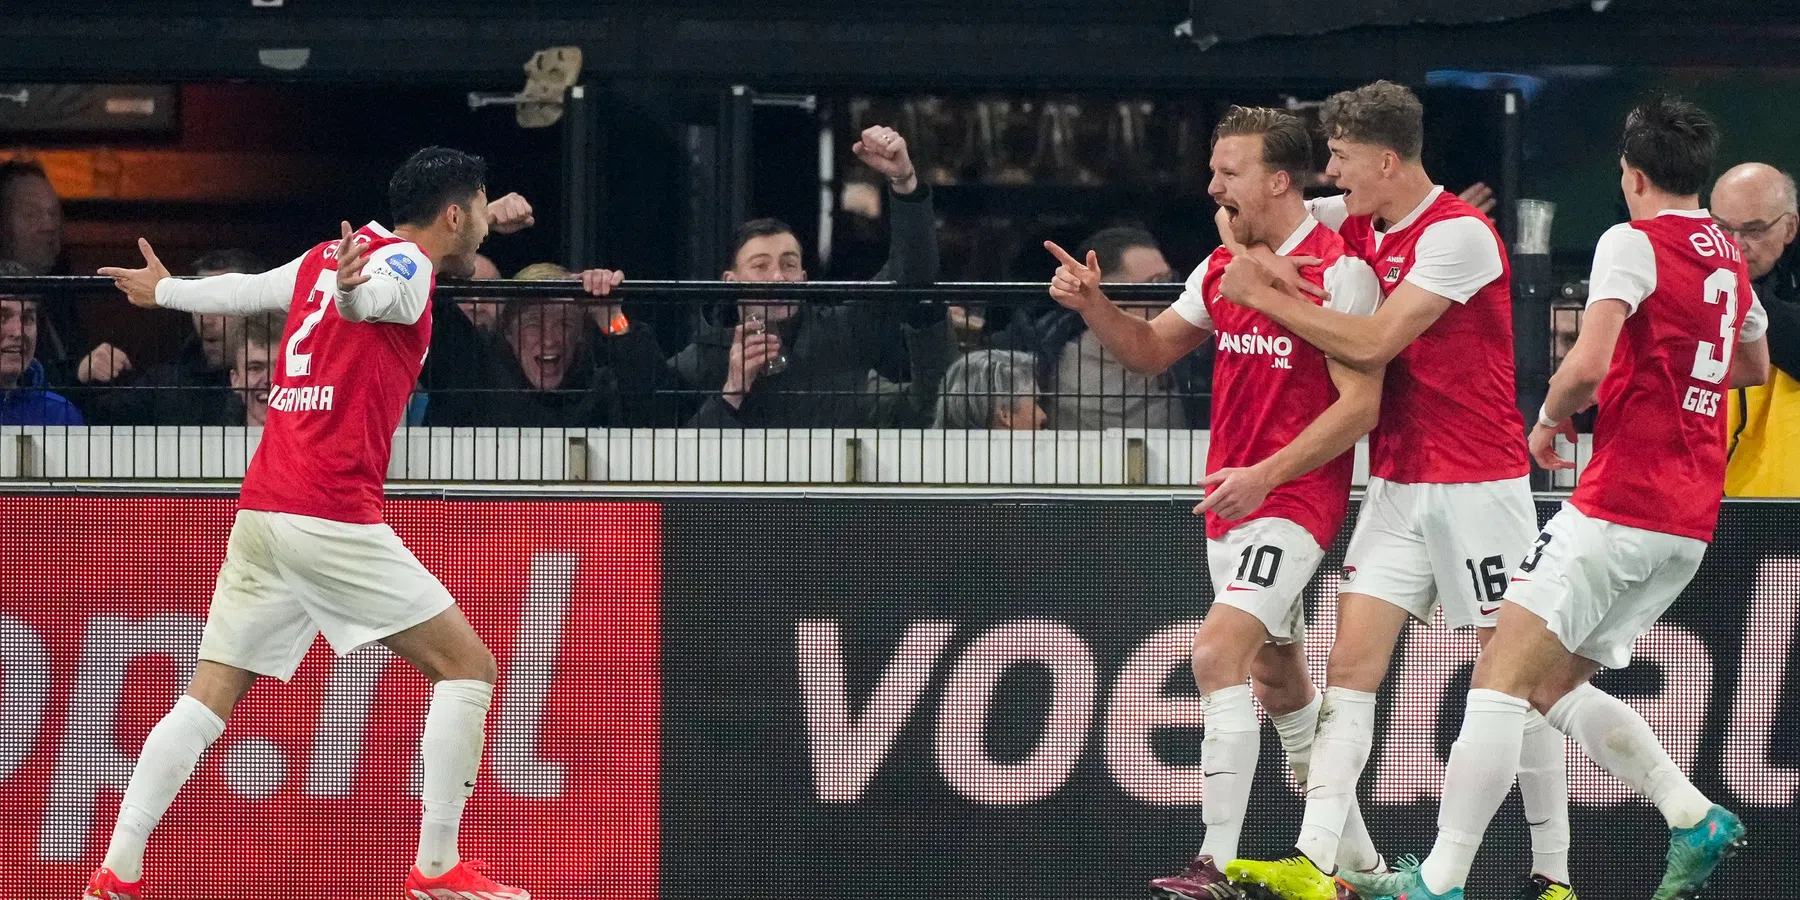 AZ laat Vitesse-zorgen nog groter worden en legt druk op FC Twente